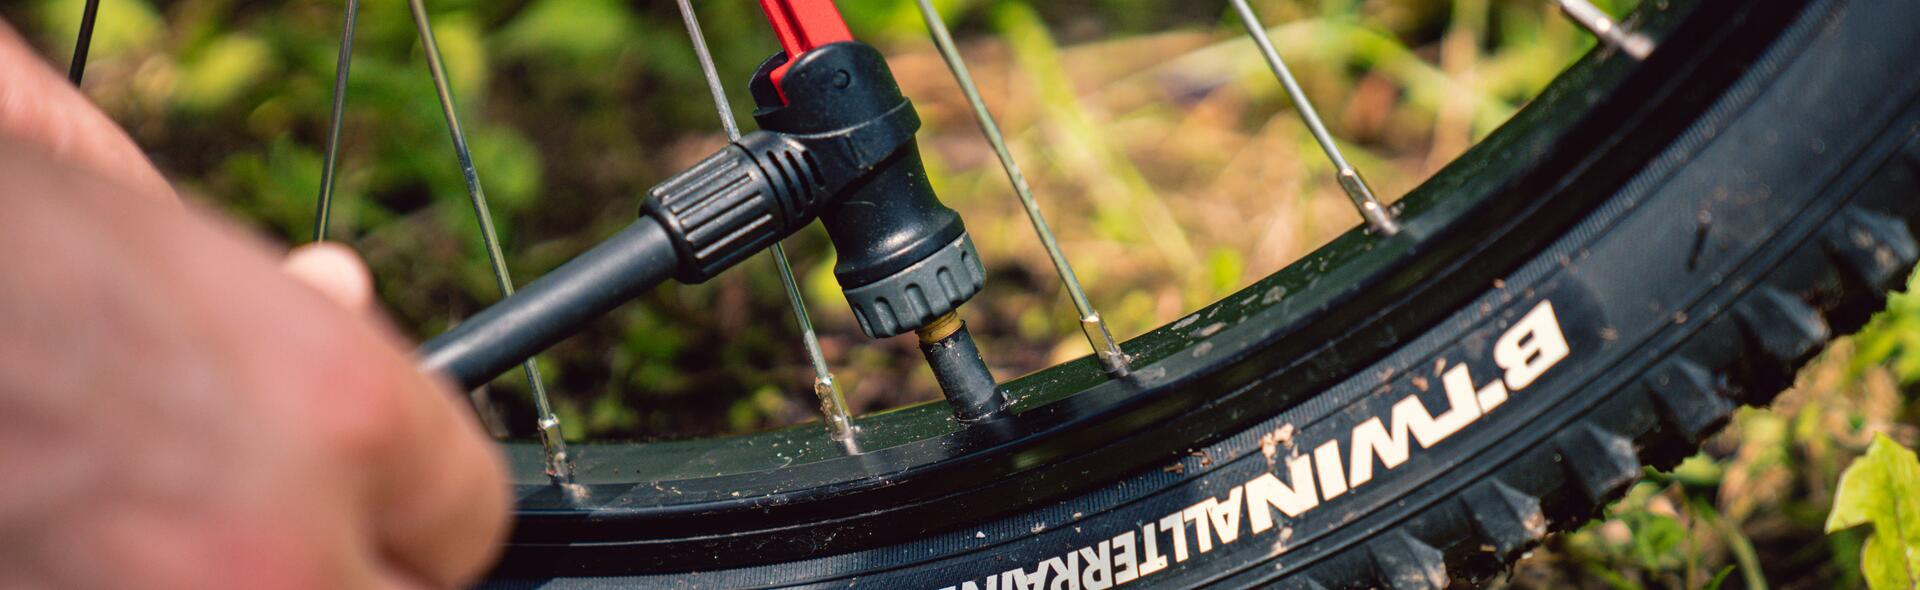 Como saber la presión ideal de los neumáticos de bicicleta de carretera